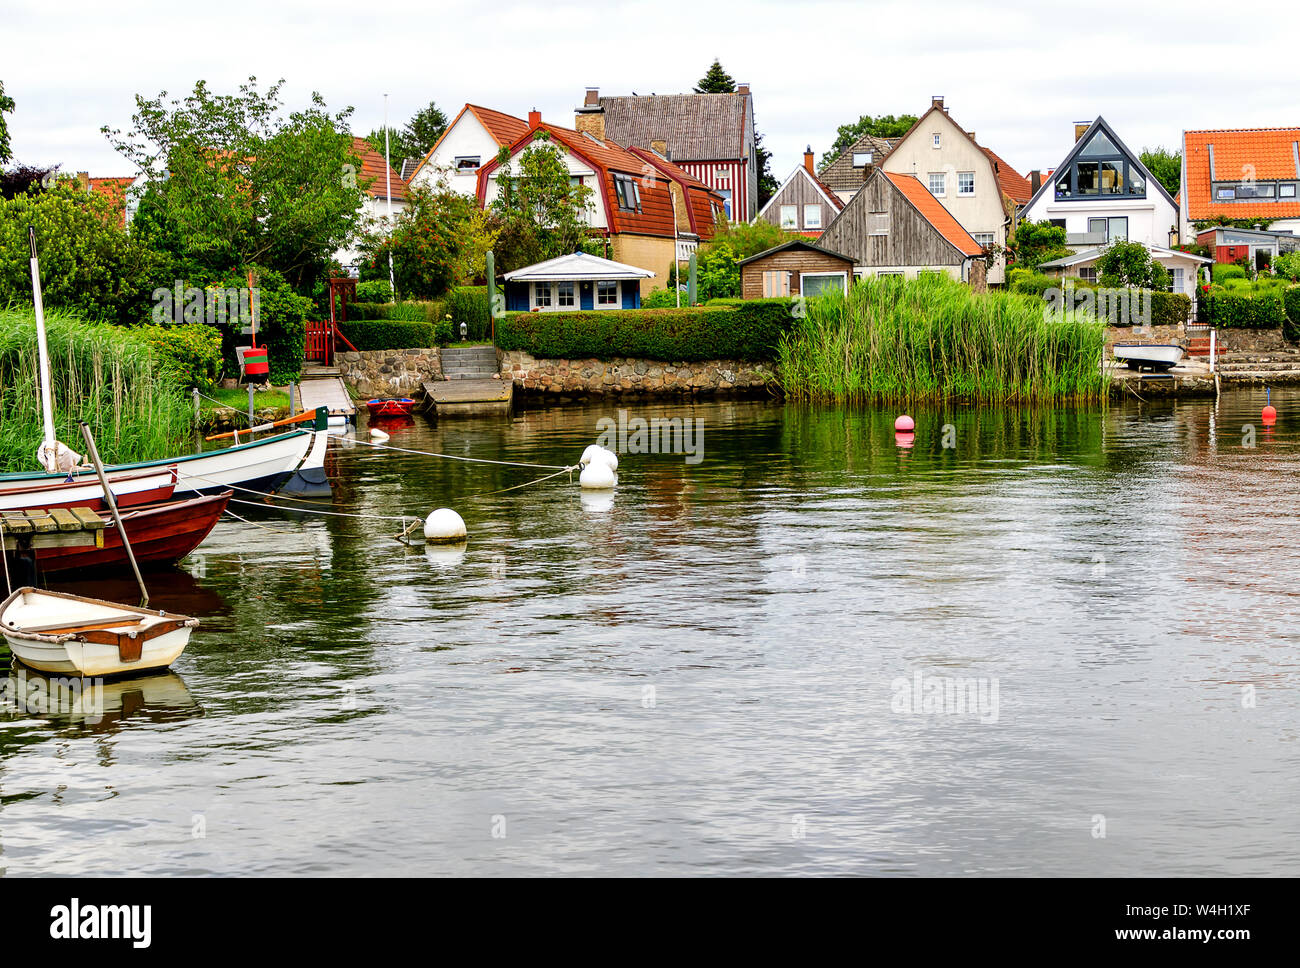 Le romantique village de pêcheurs historique Holm est le plus ancien quartier de Schleswig, Schleswig-Holstein, Allemagne Banque D'Images